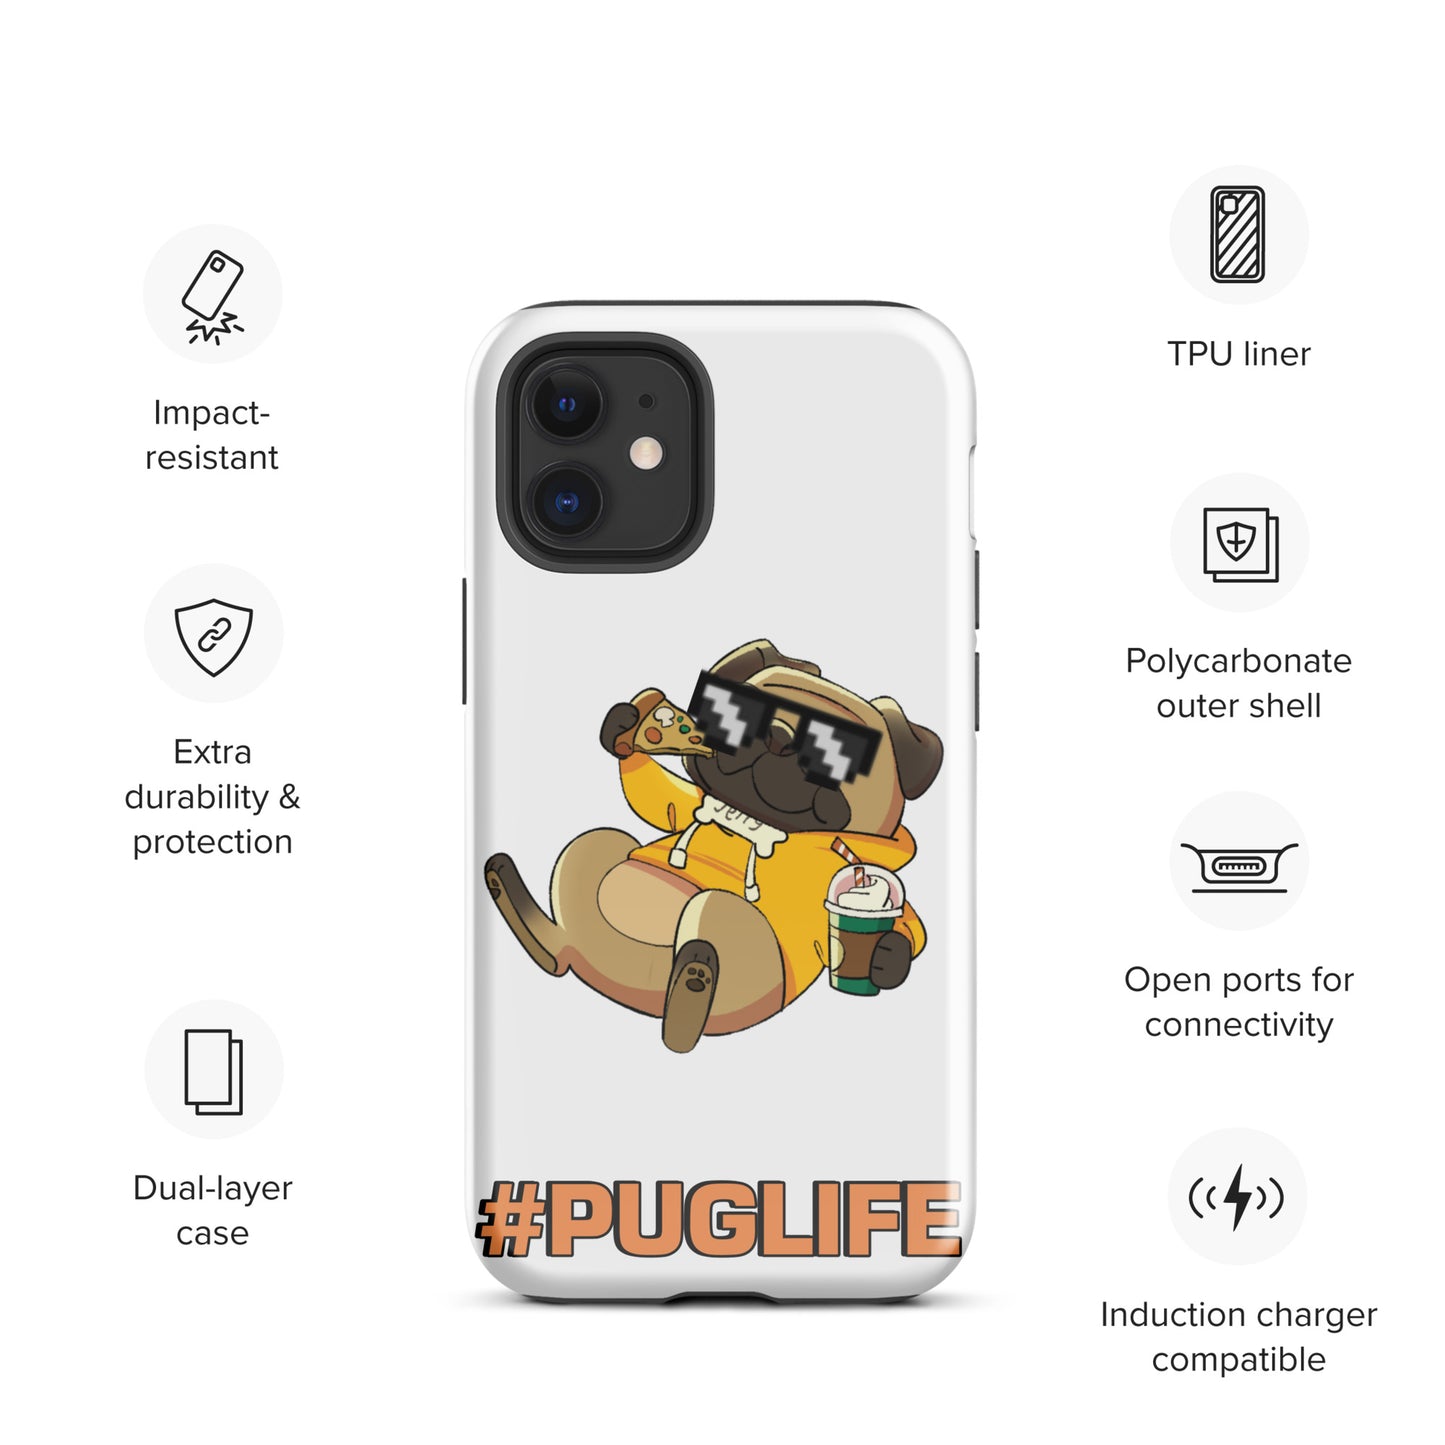 #PUGLIFE IPhone Case